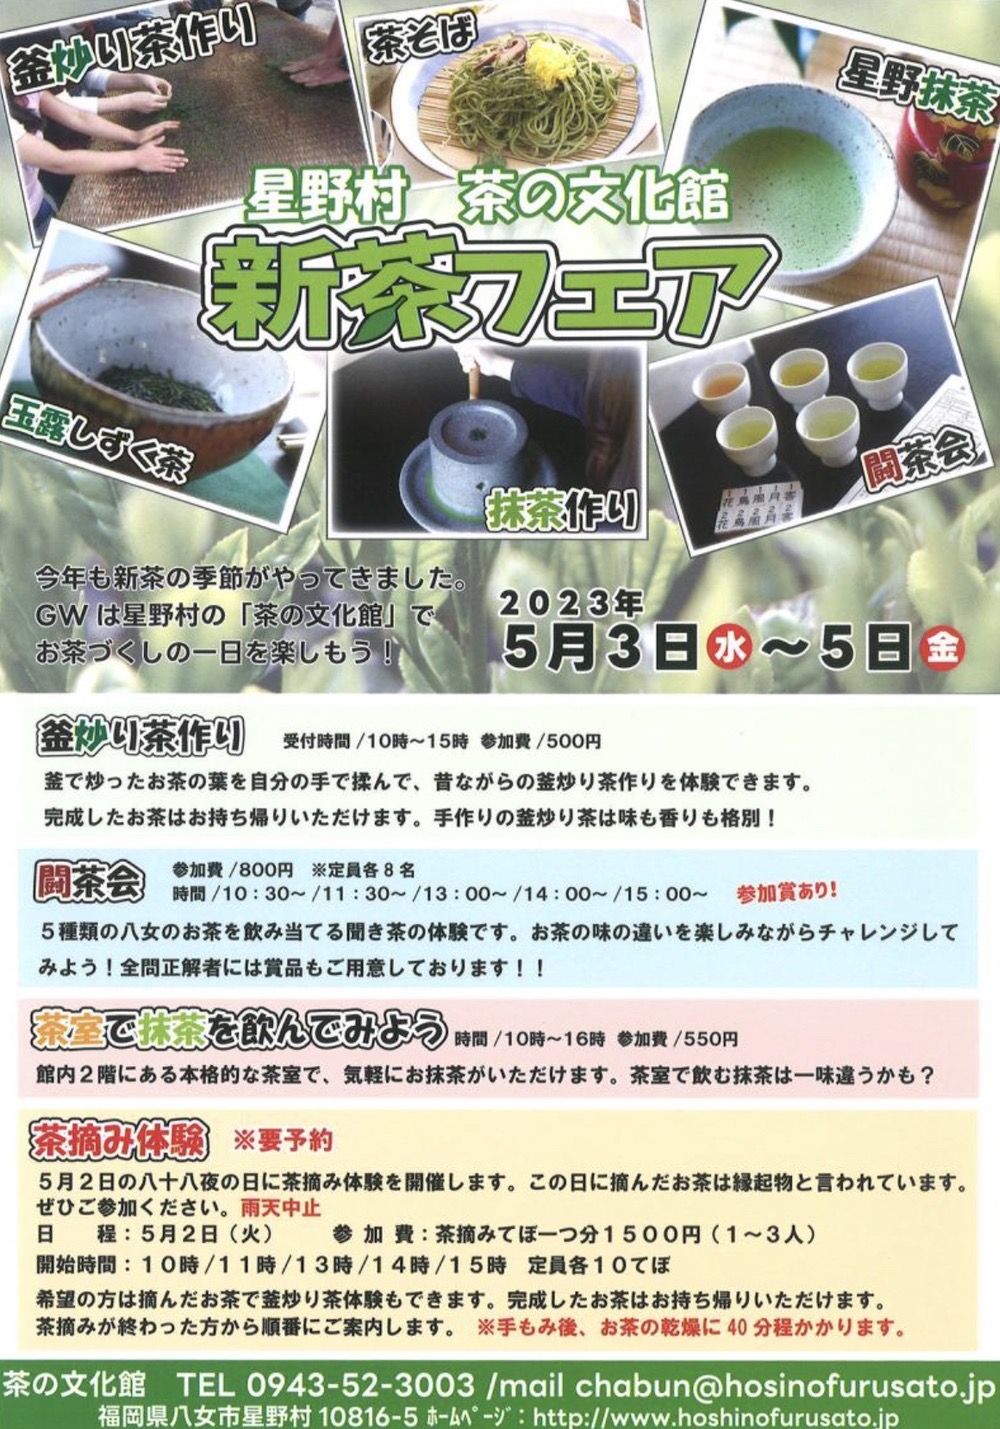 星野村 茶の文化館 「新茶フェア」イベント内容